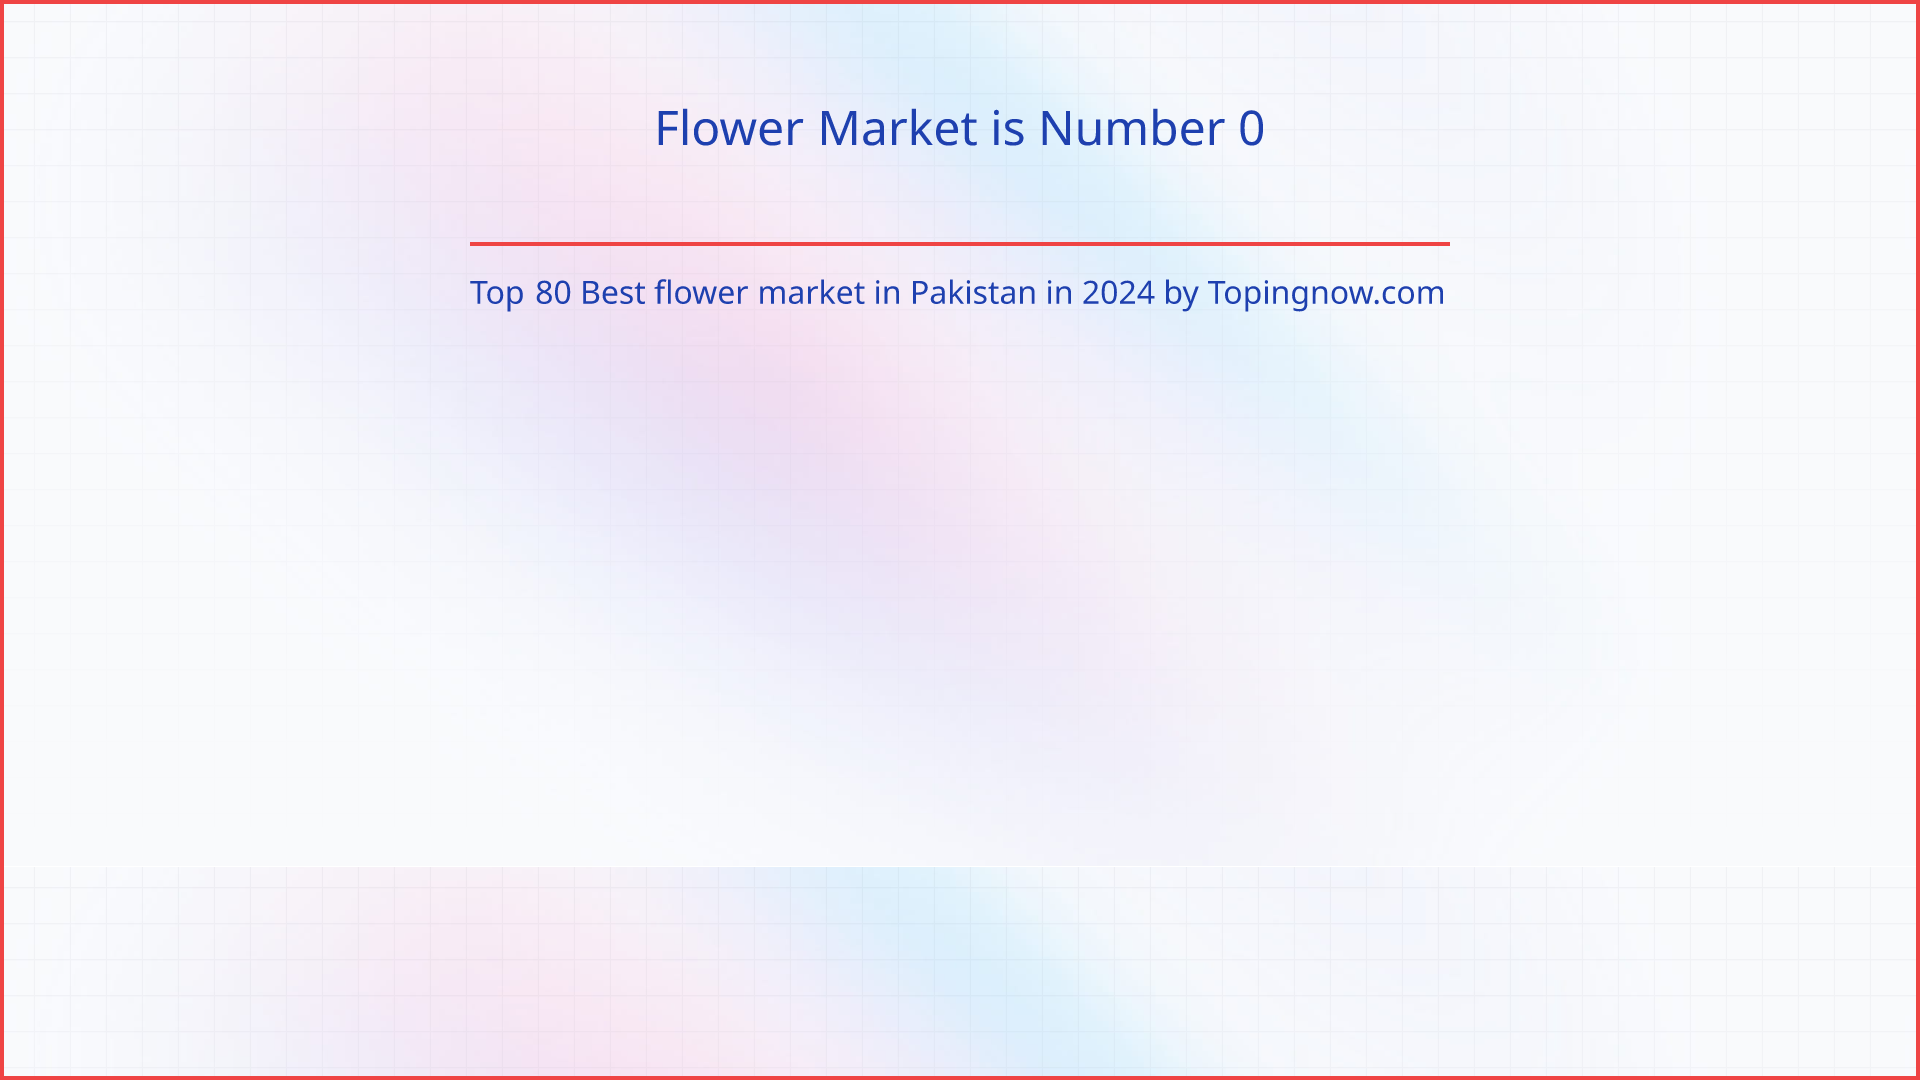 Flower Market: Top 80 Best flower market in Pakistan in 2024